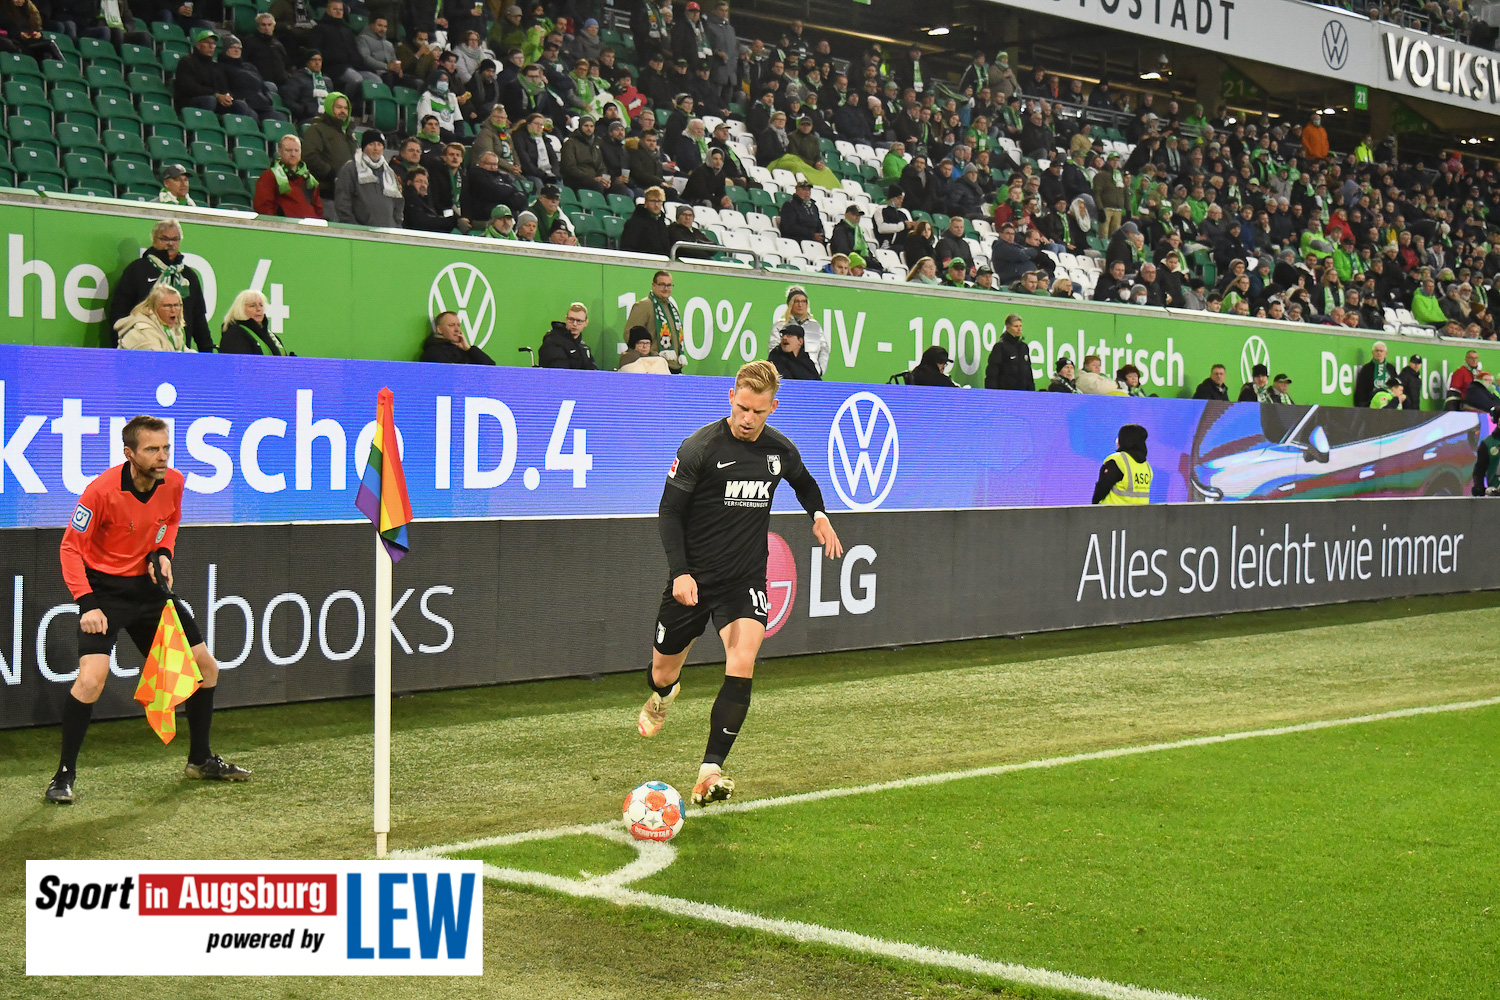 VfL Wolfsburg - FCA 06.11.21 - 30